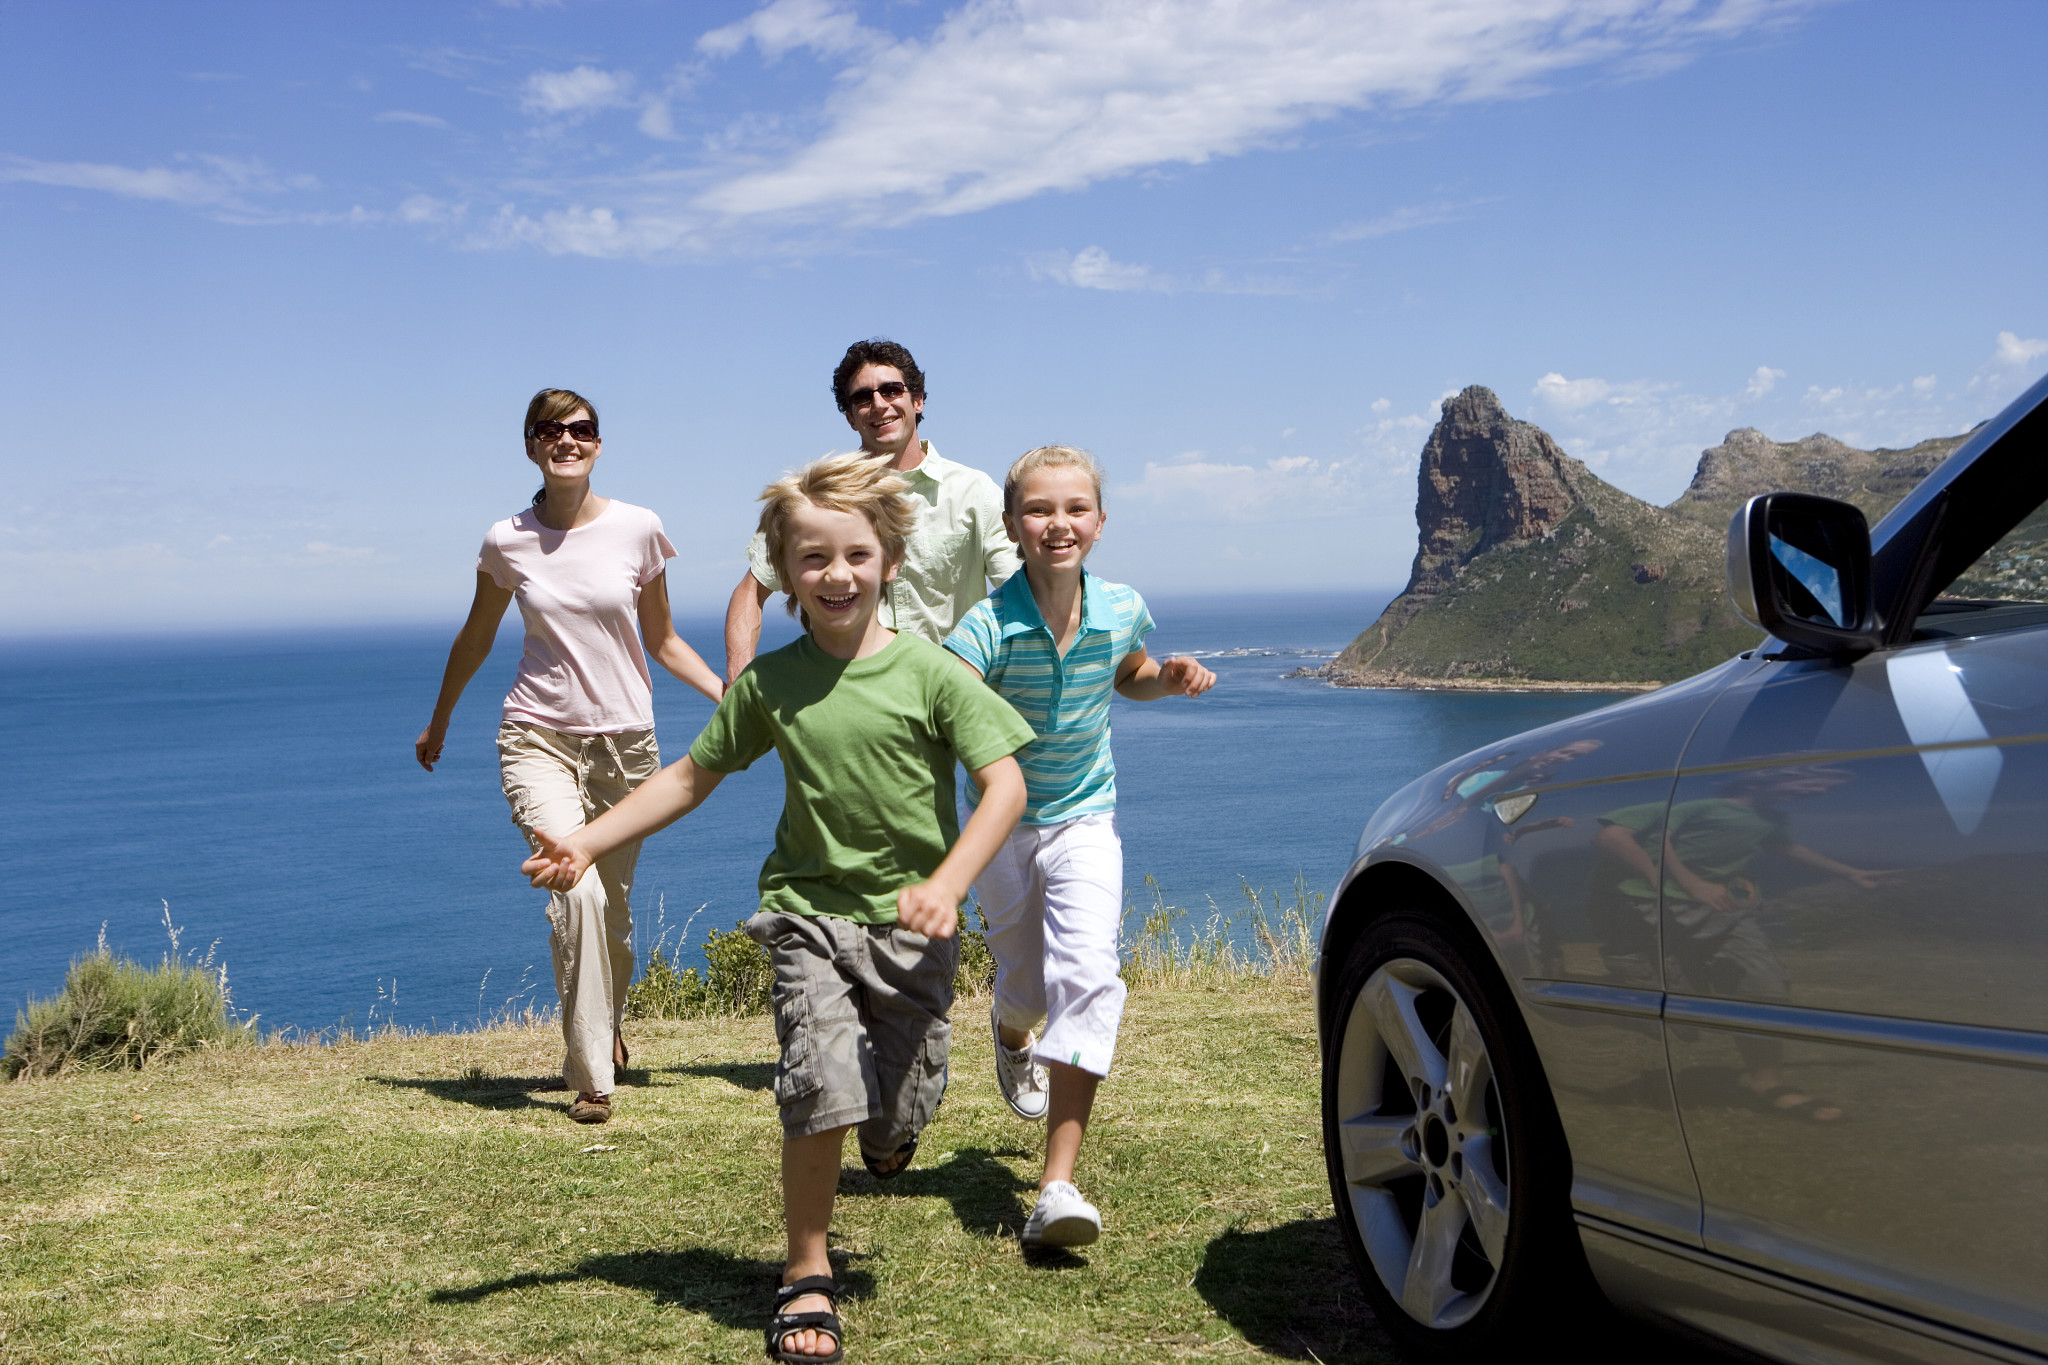 Куда можно поехать с семьей. Машина для путешествий семьей. Путешествие с семьей. Семейные путешествия с детьми. Семья в поездке.